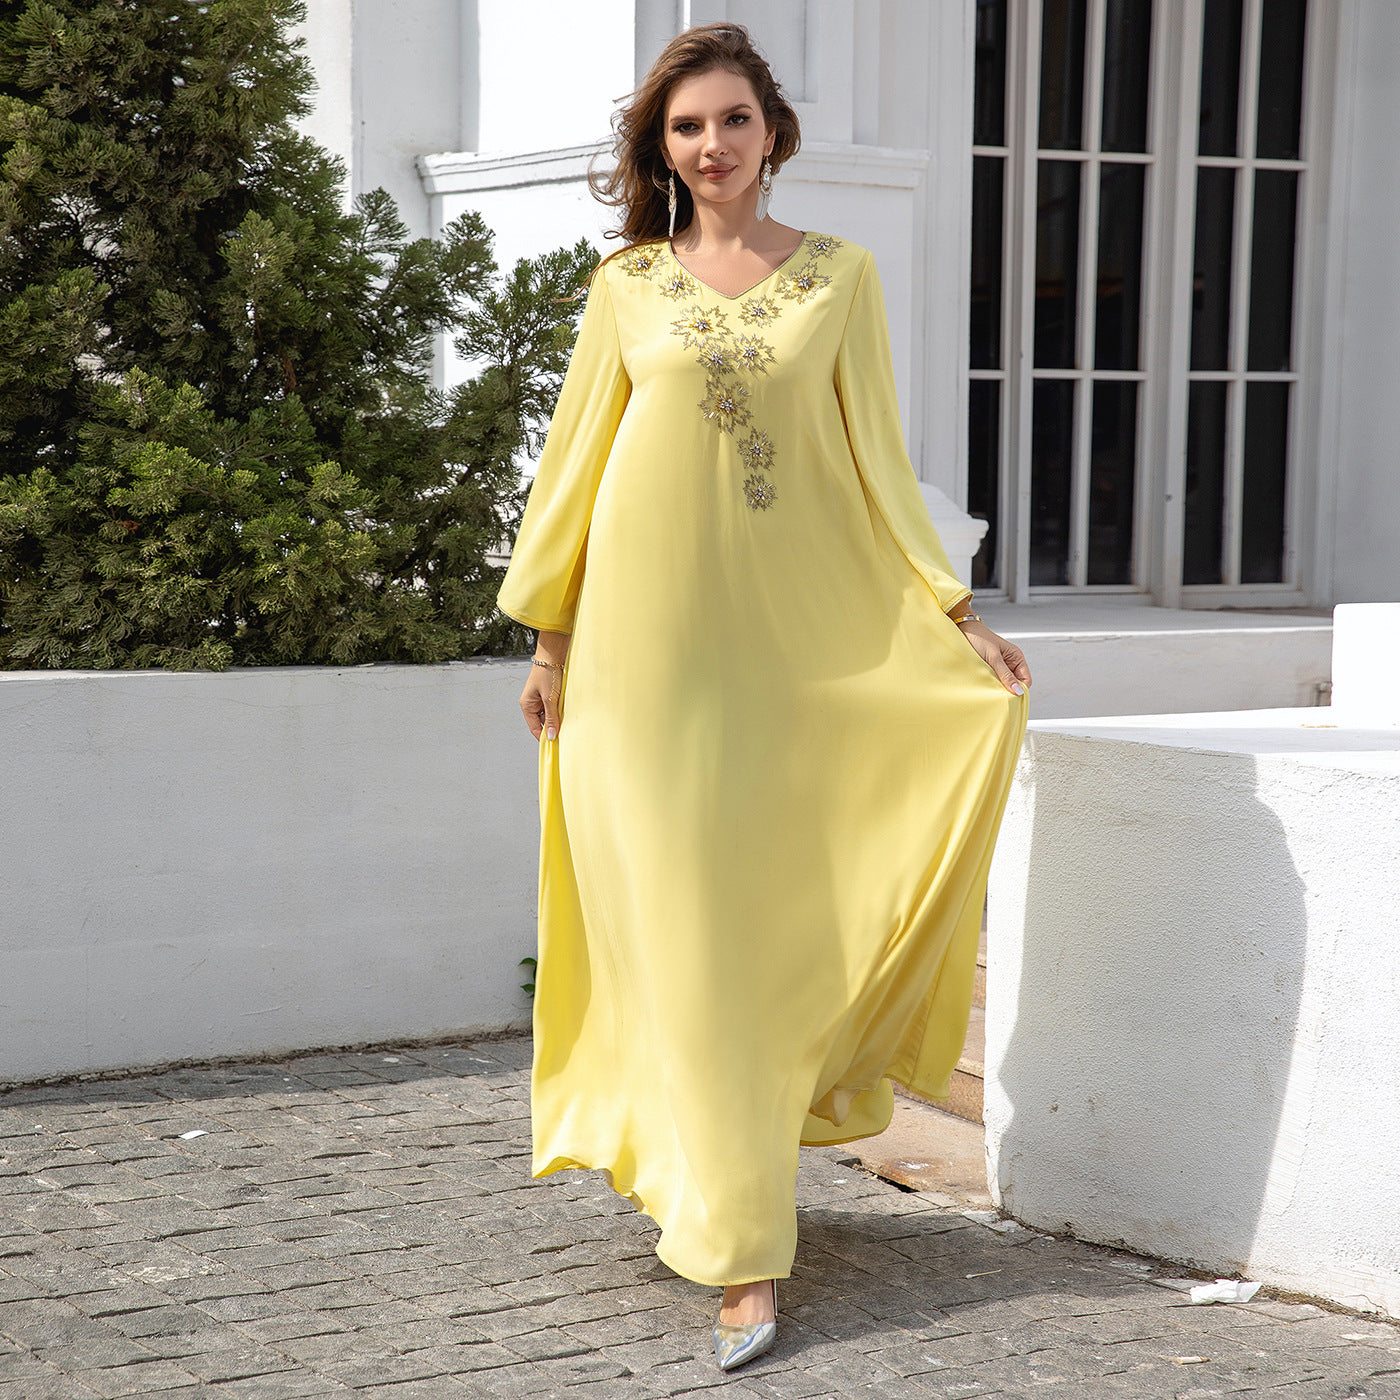 Women's V-neck Yellow Evening Dress